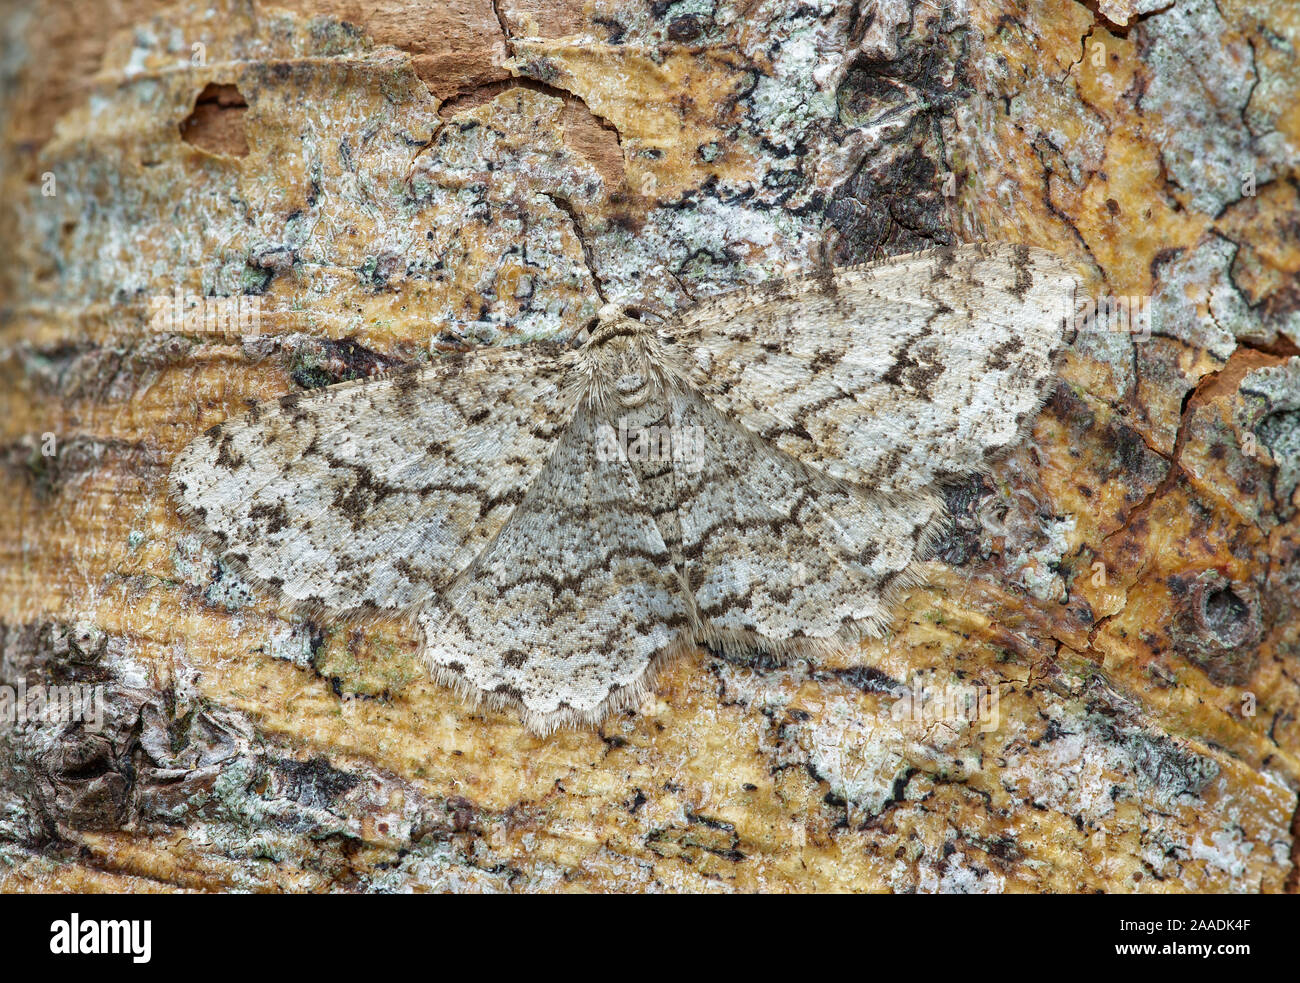 Munito di granitura tarma (Ectropis crepuscularia) mimetizzata sul tronco di albero, Fiume Bann Banbridge, County Down, Irlanda del Nord. Foto Stock